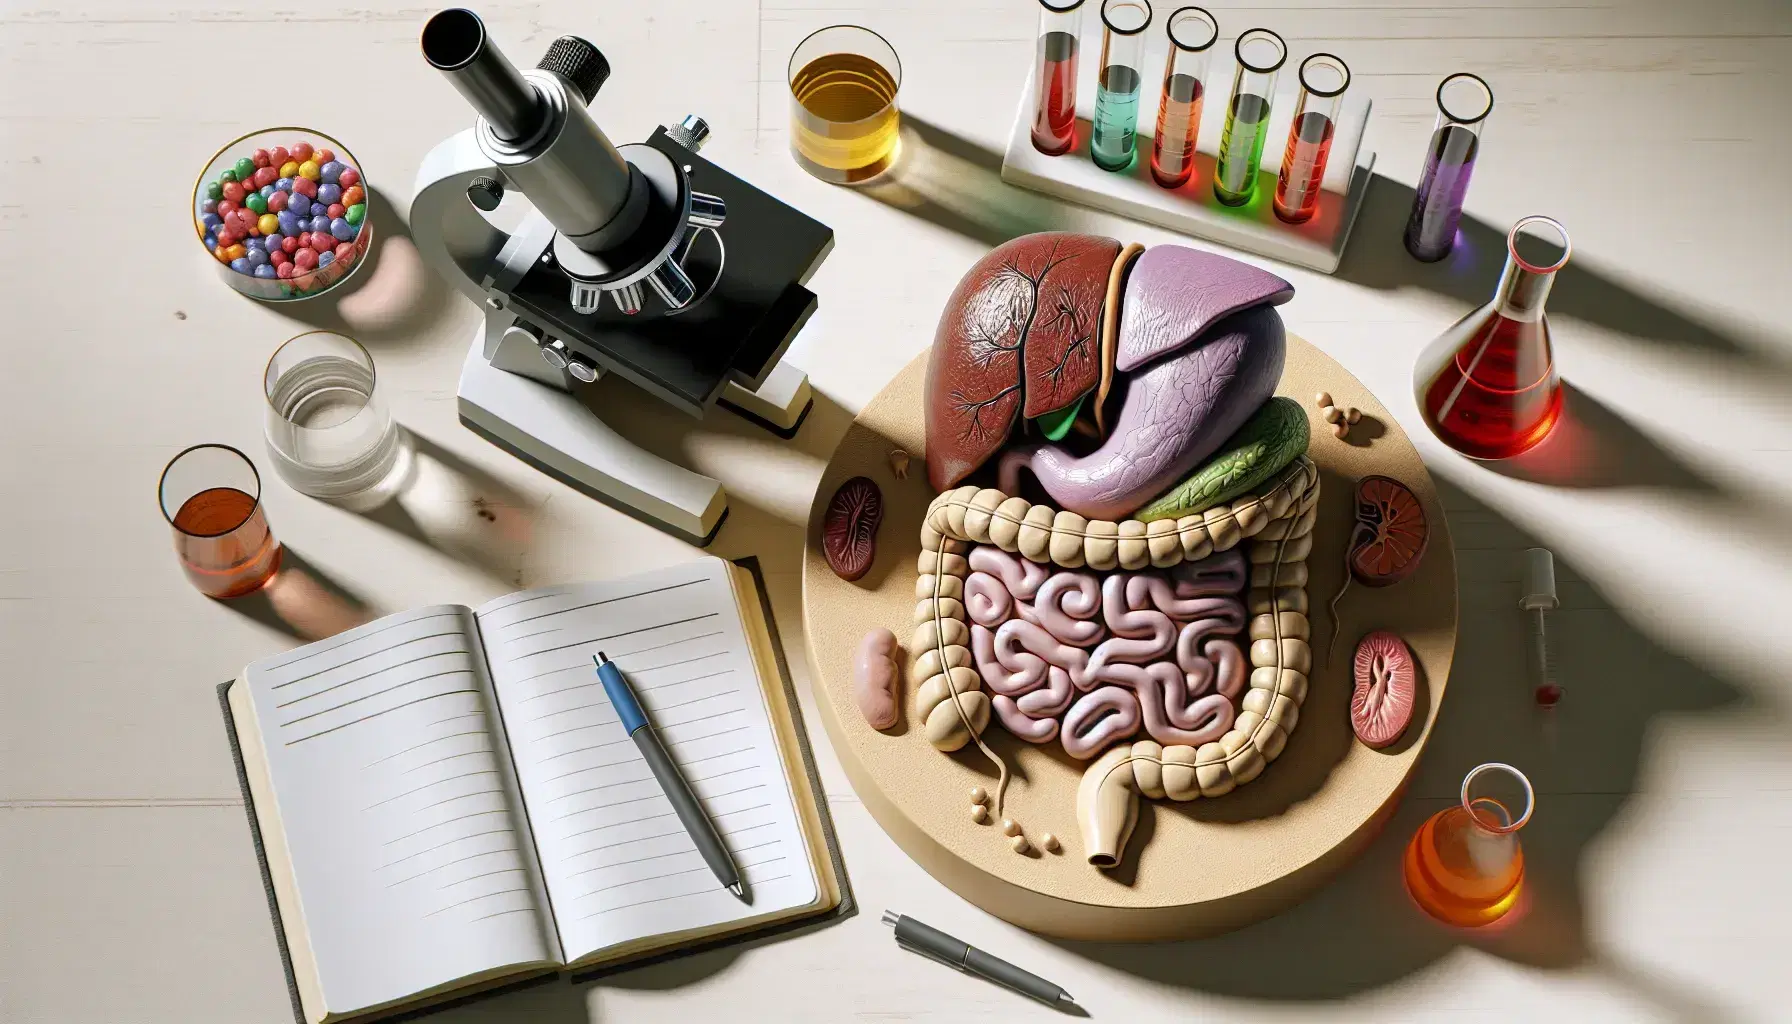 Vista superior de una mesa de laboratorio con modelo anatómico del sistema digestivo humano, microscopio, plato de Petri, tubos de ensayo con líquidos de colores y cuaderno con bolígrafo.